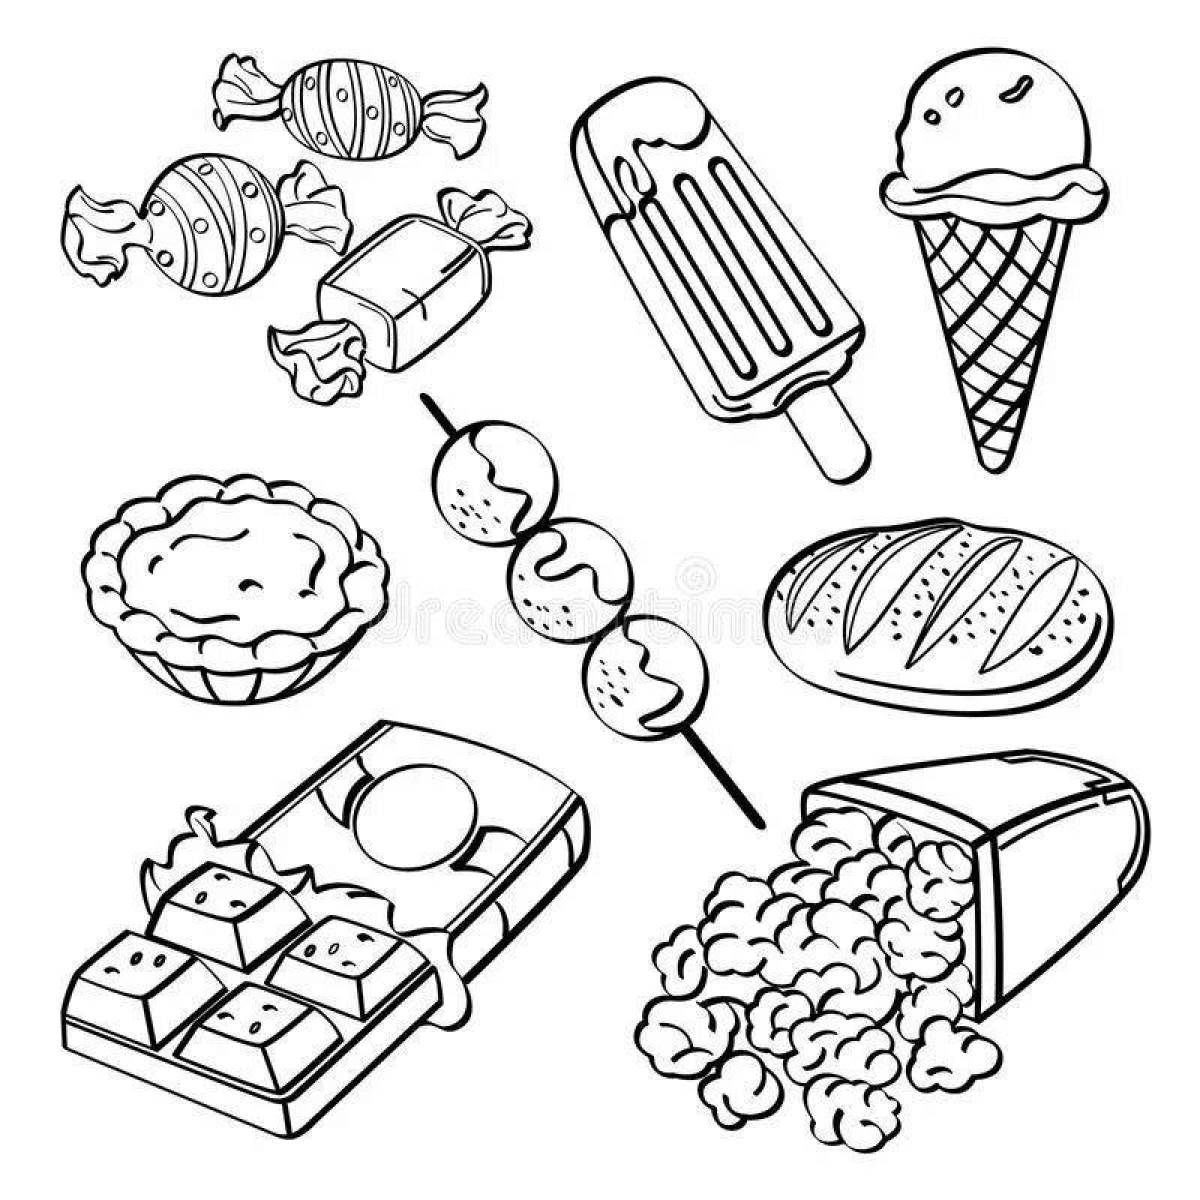 Appetizing junk food coloring book